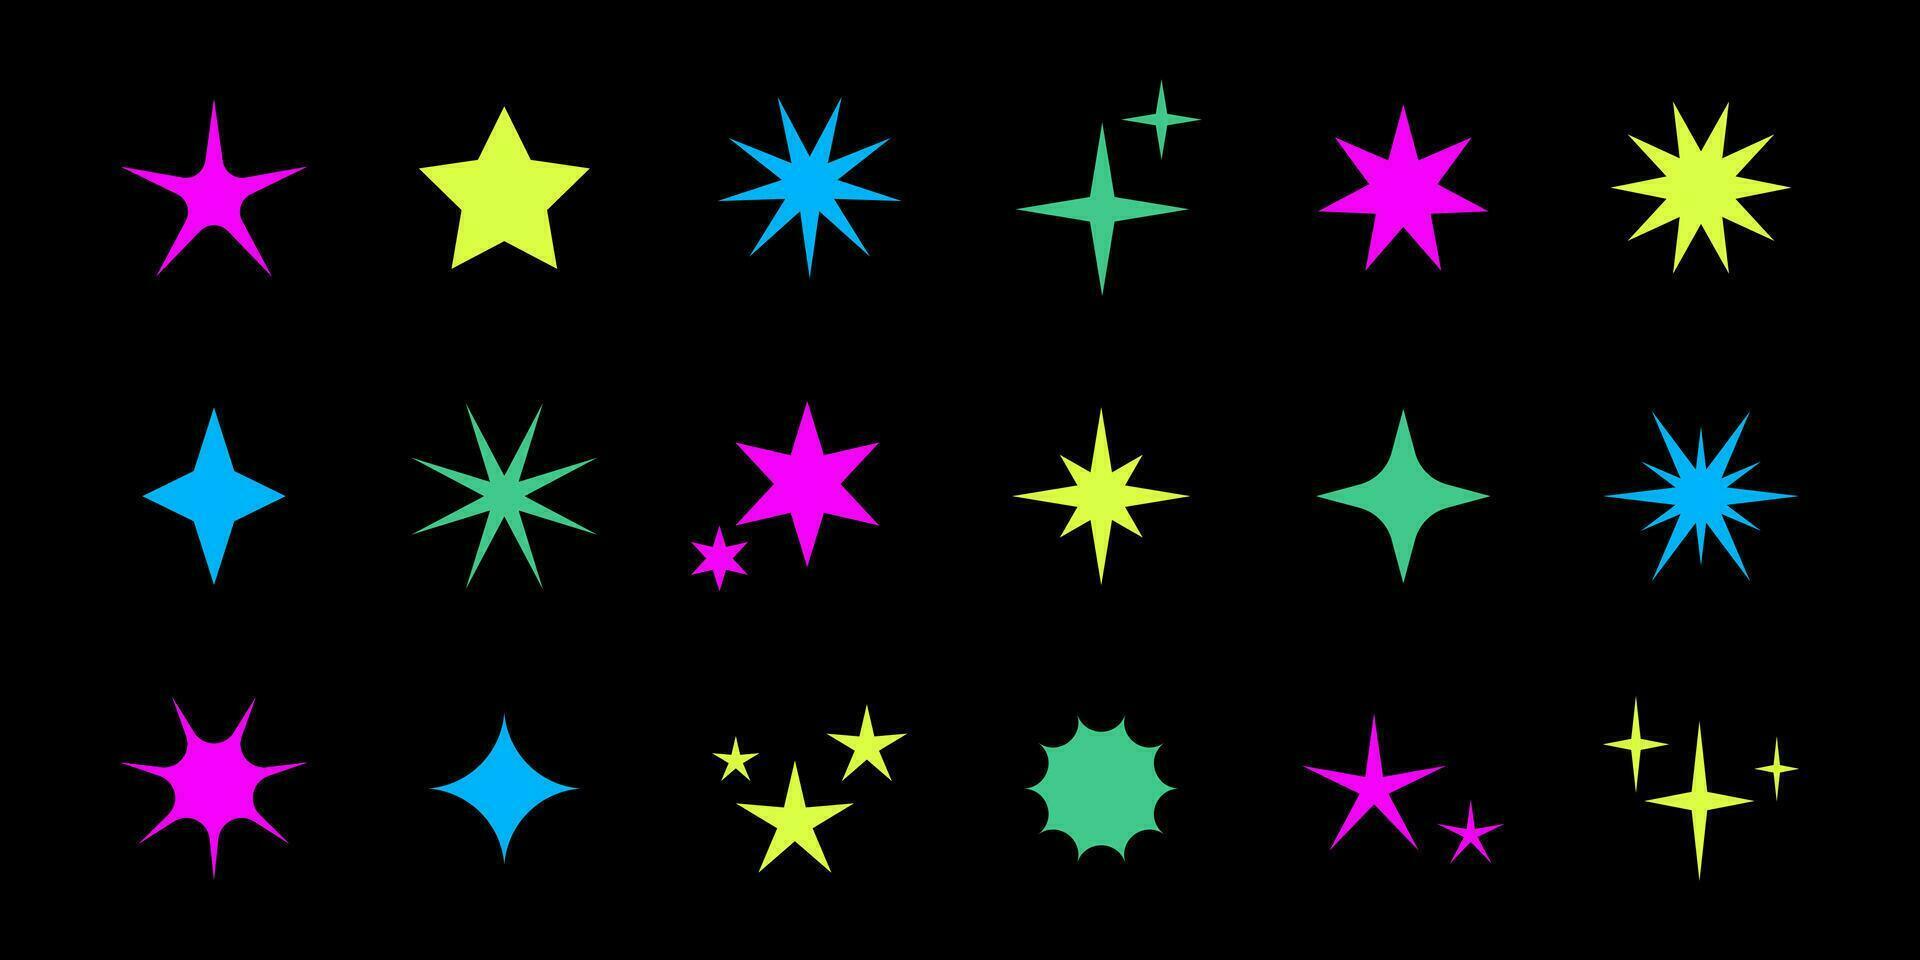 vektor retro uppsättning av syra trogen gnistra ikoner på svart bakgrund. samling av färgrik stjärna former. y2k abstrakt stjärnor. abstrakt Häftigt glans 90s tecken.